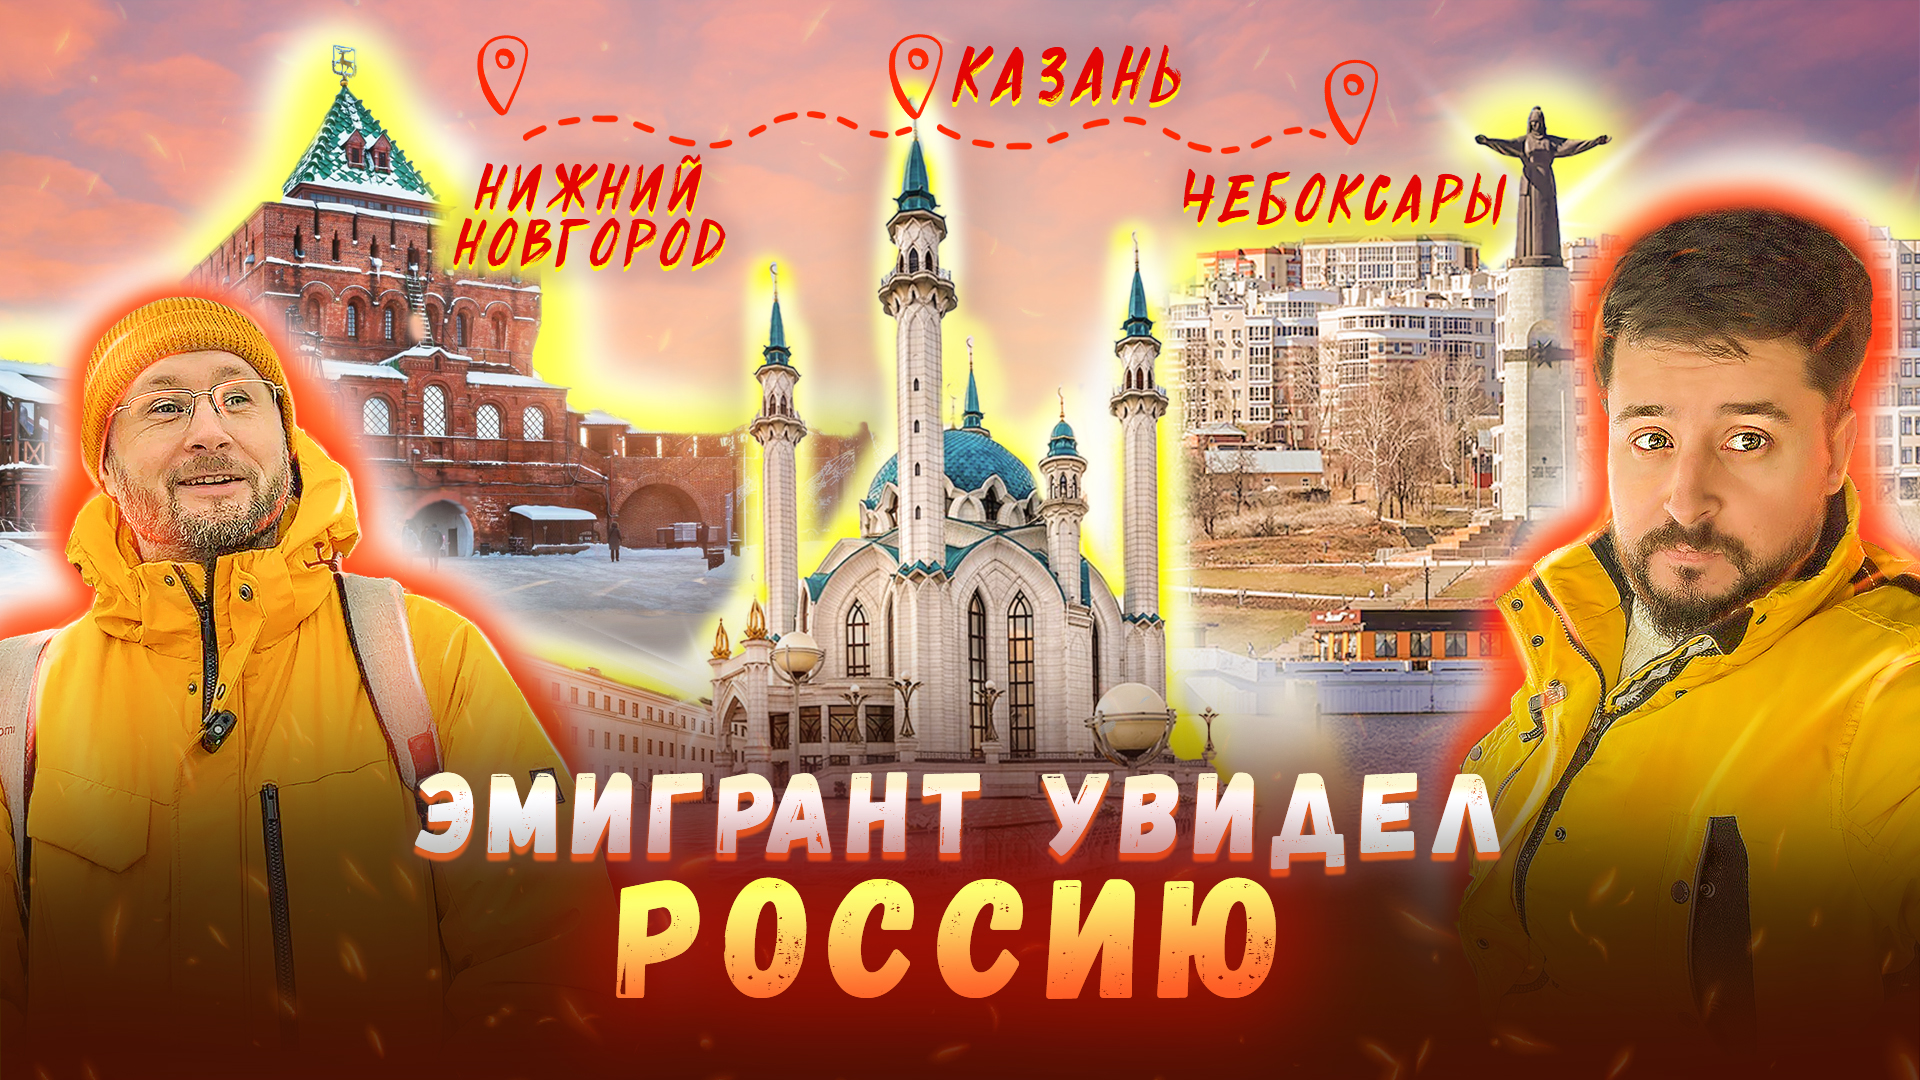 Лучший туристический маршрут: Нижний Новгород, Казань, Чебоксары. Вот она Россия!